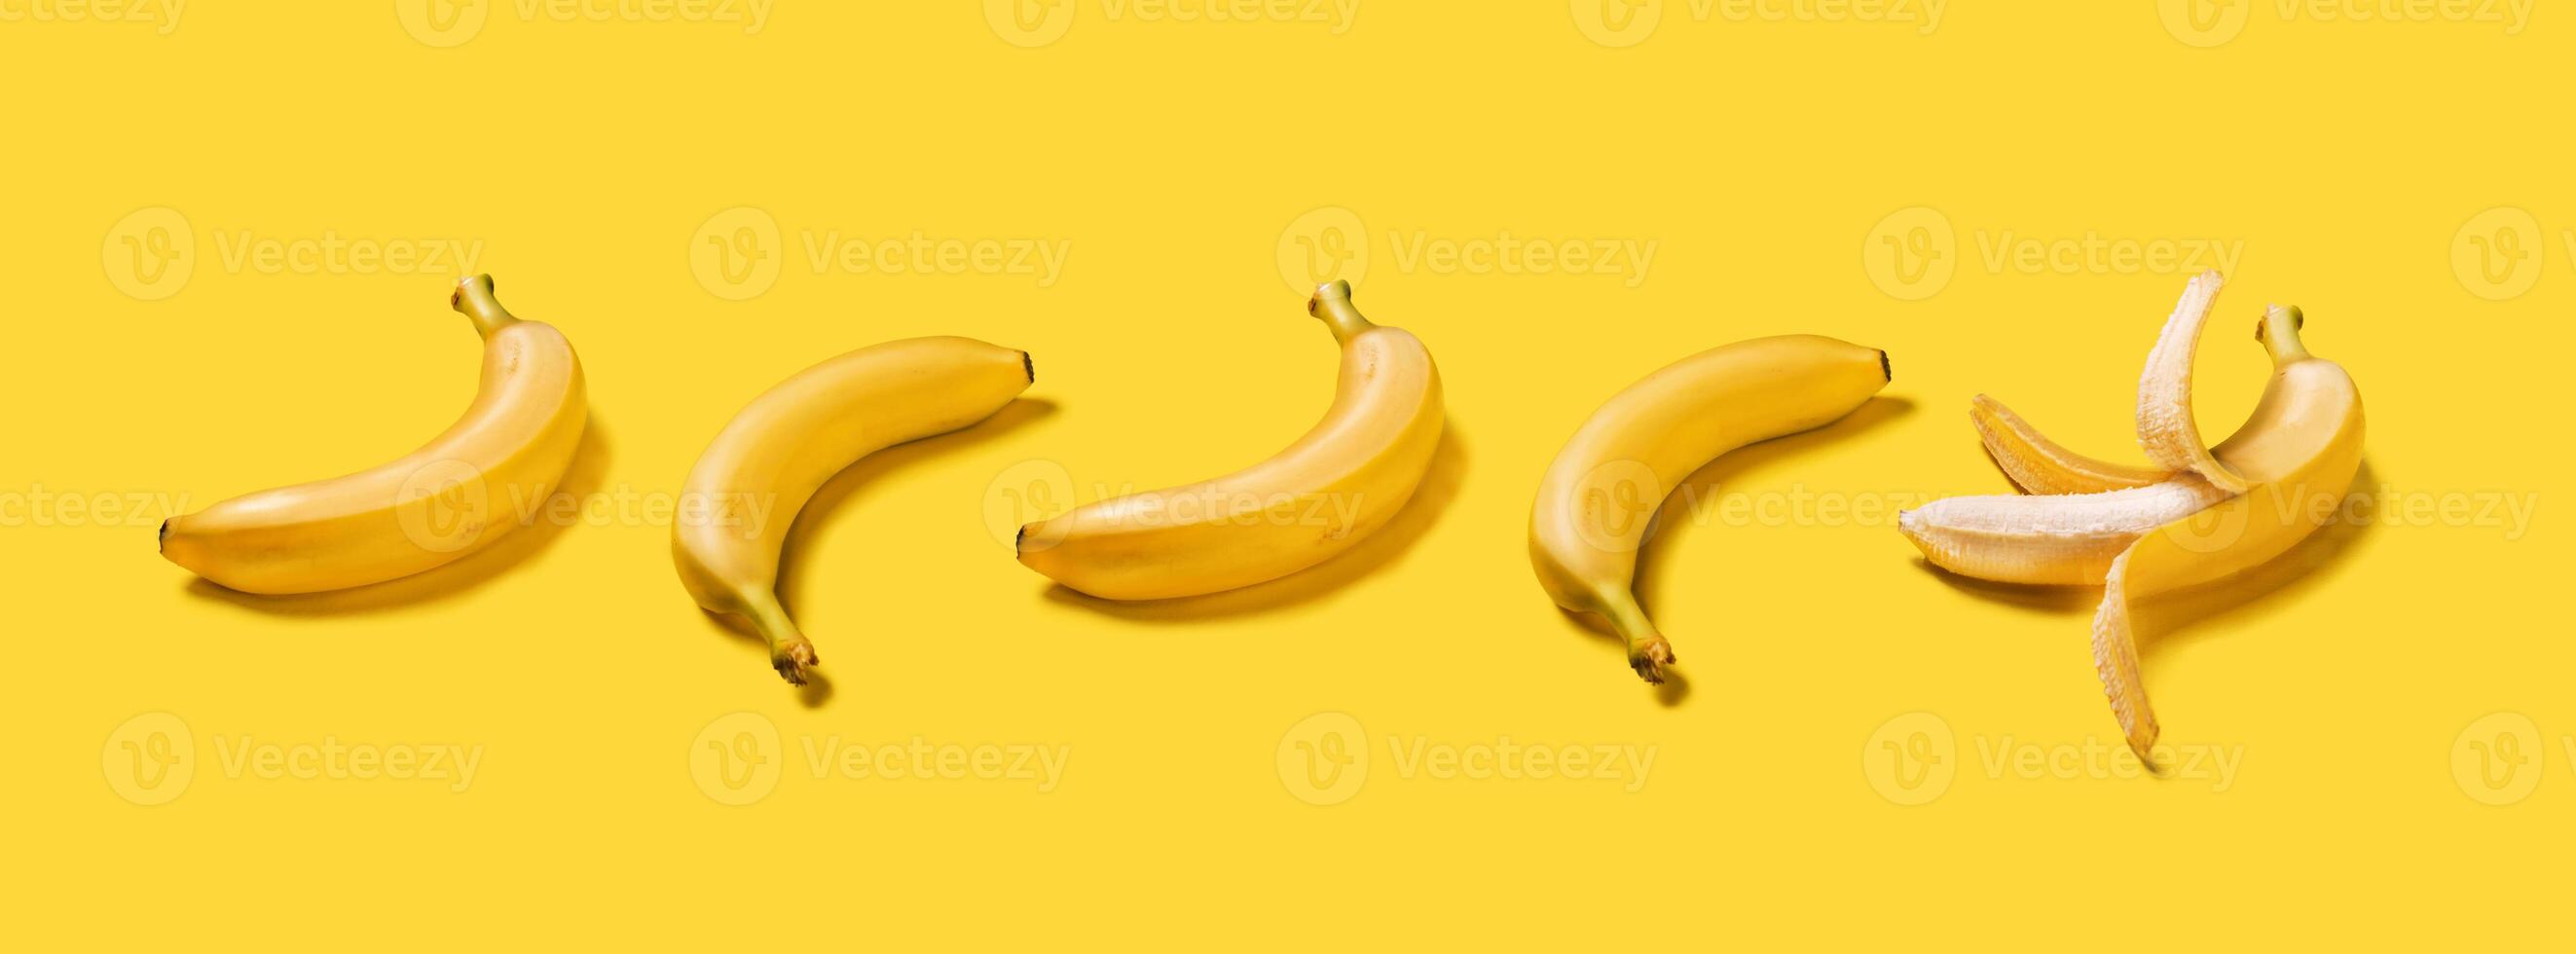 baner bananer med hård skuggor mönster på gul bakgrund foto